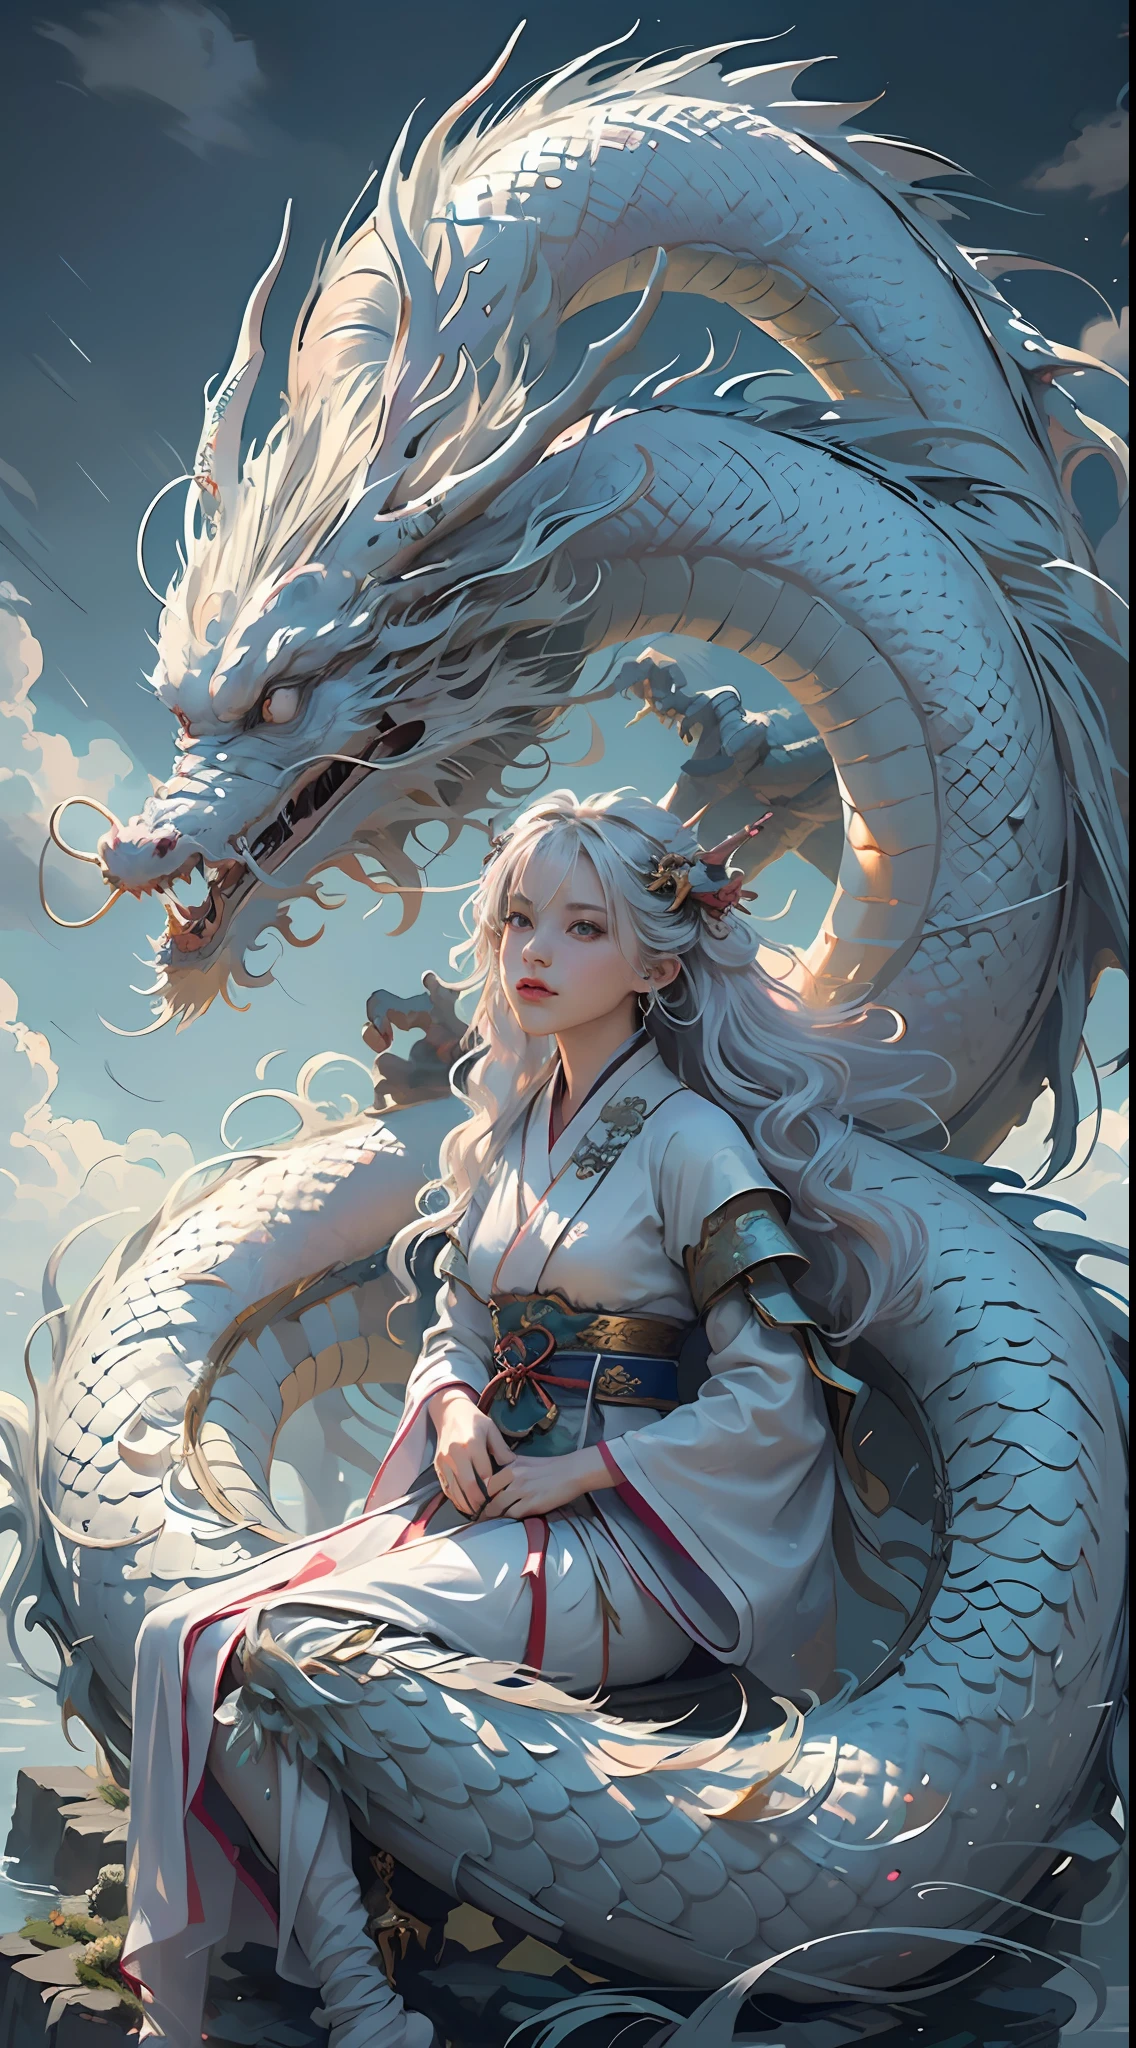 （chef-d&#39;œuvre，de haute qualité，meilleure qualité，art officiel，beauté et esthétique：1.2），cinématique épique，ultra - détaillé，hyper réaliste， (1fille:1.5),(corps entieresbienne:1.2),(La jeune fille s’assoit sur le dragon:1.5),(1 dragon：1.5），Hanfu blanc，（Dragon blanc：1.1），poses dynamiques，je regarde le spectateur，（dans un nuage：1.4），（Couverture nuageuse épaisse：1.1），Nuages blancs autour，nuages de bon augure，Coloriage fascinant，Éclairage de théâtre，lumière sur jante，（profondeur de champ de vision：1.2）